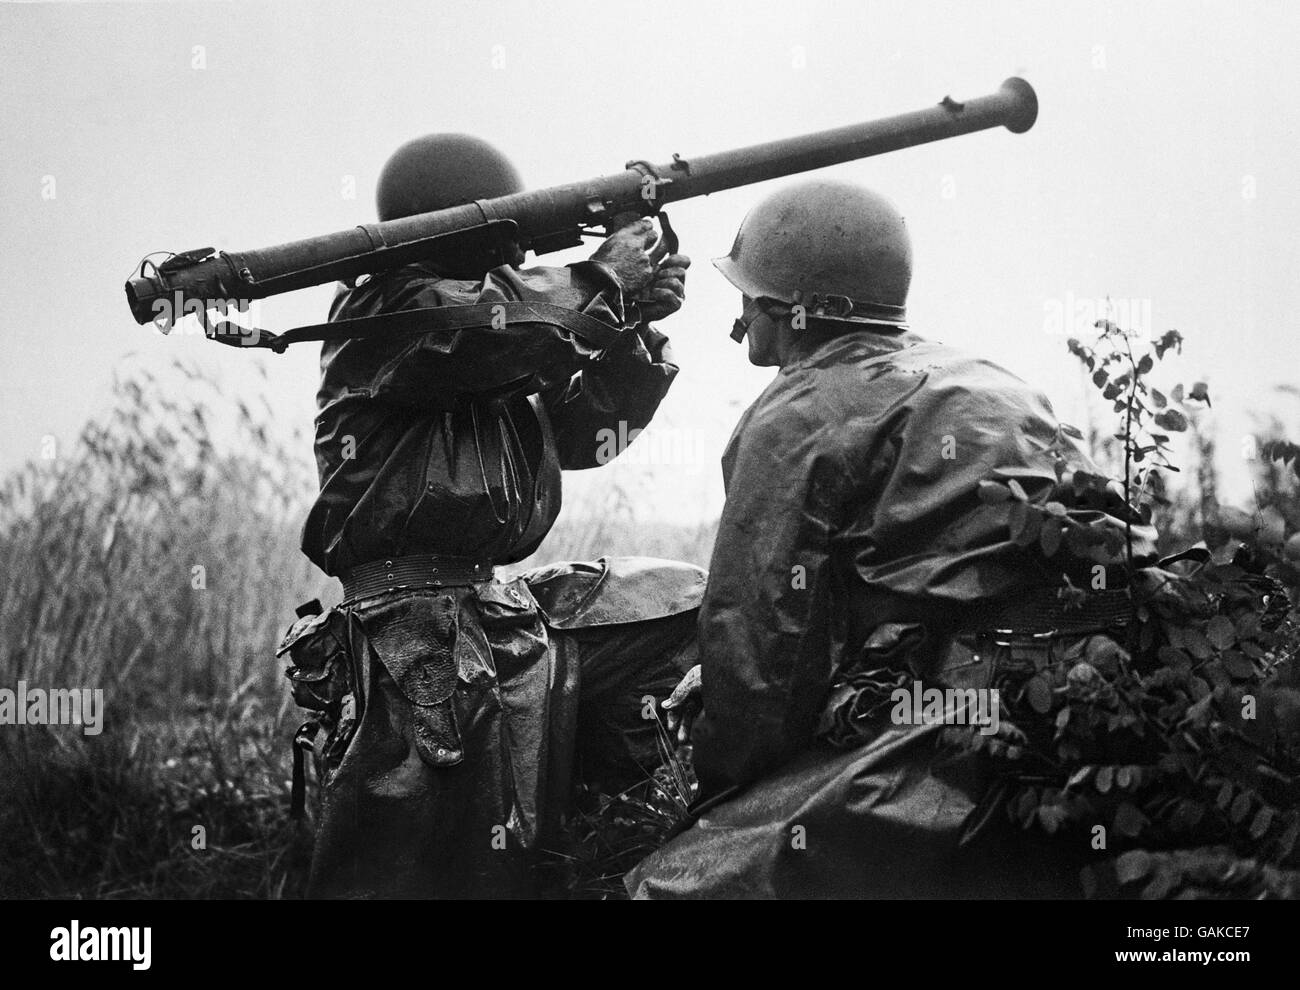 Dieses zwei-Mann-Bazooka-Team bereitet sich darauf vor, Panzer der nordkoreanischen Armee in der Nähe der Fronten der Schlacht amerikanischer und südkoreanischer Truppen gegen die roten Invasoren aus dem Norden anzufeuern. Stockfoto